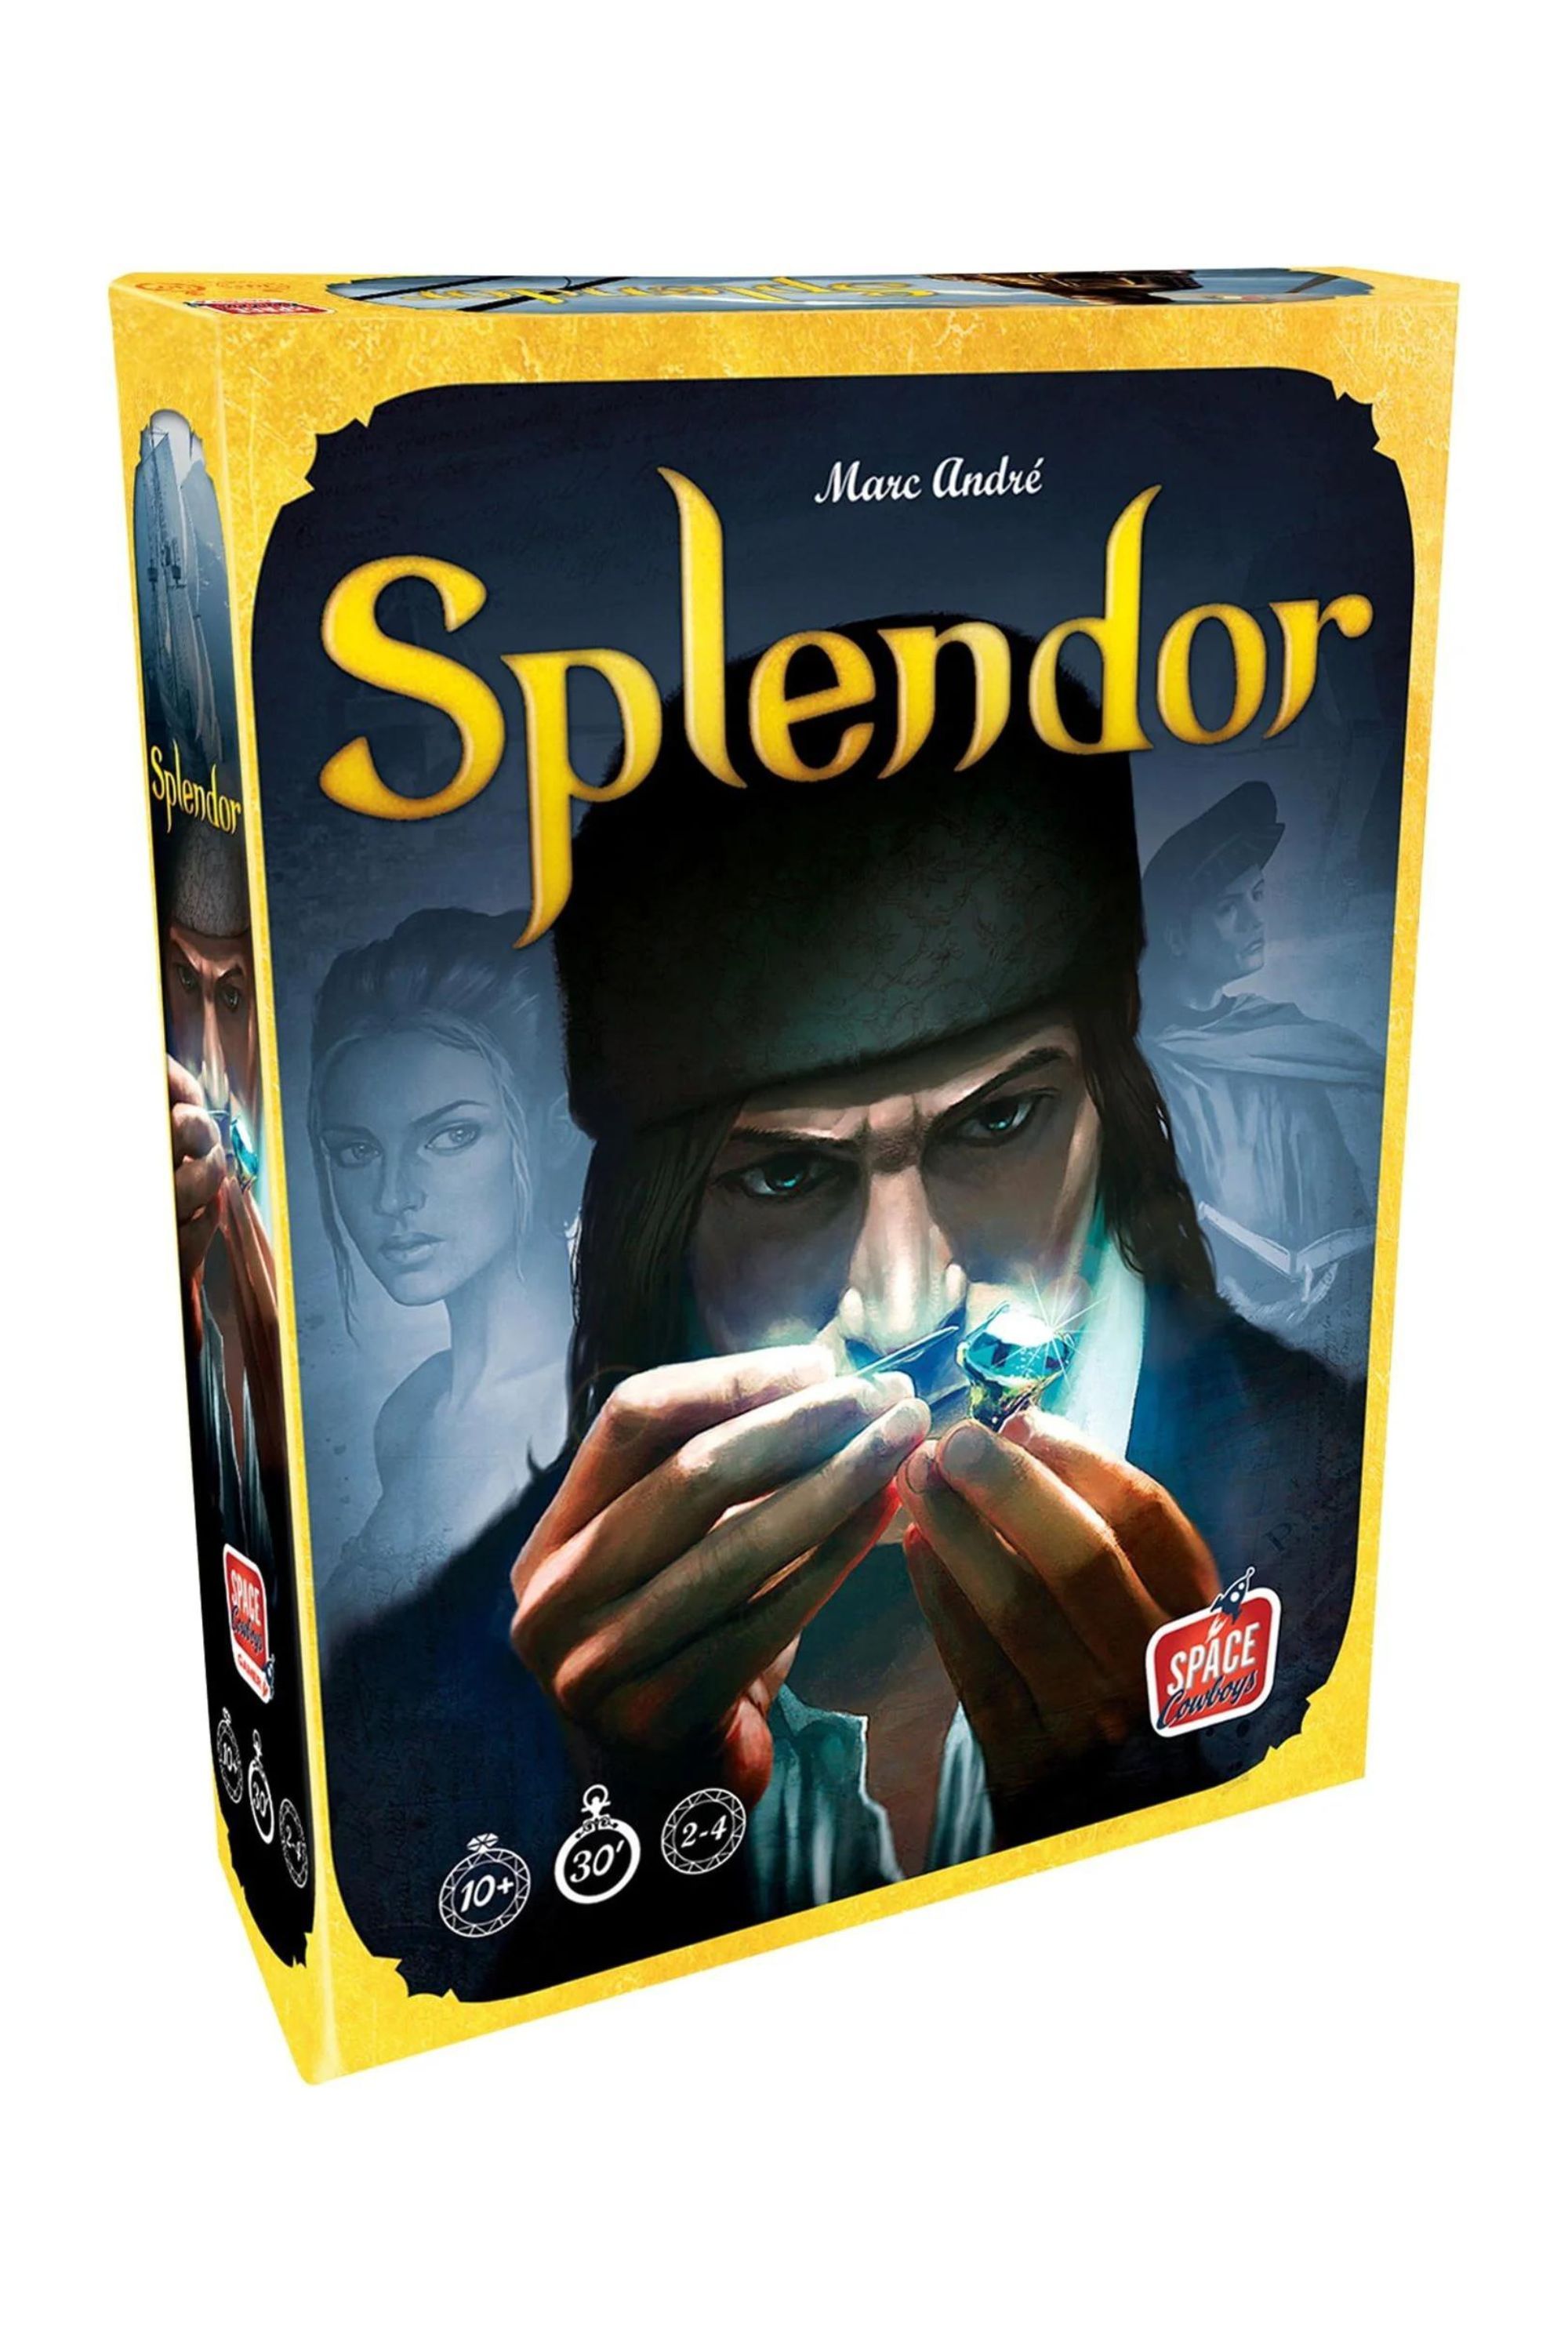 Sản phẩm vẫn từ trò chơi trên bàn Splendor, trong đó tác phẩm nghệ thuật thể hiện một người đàn ông cầm viên đá quý màu xanh lam trên nền trắng